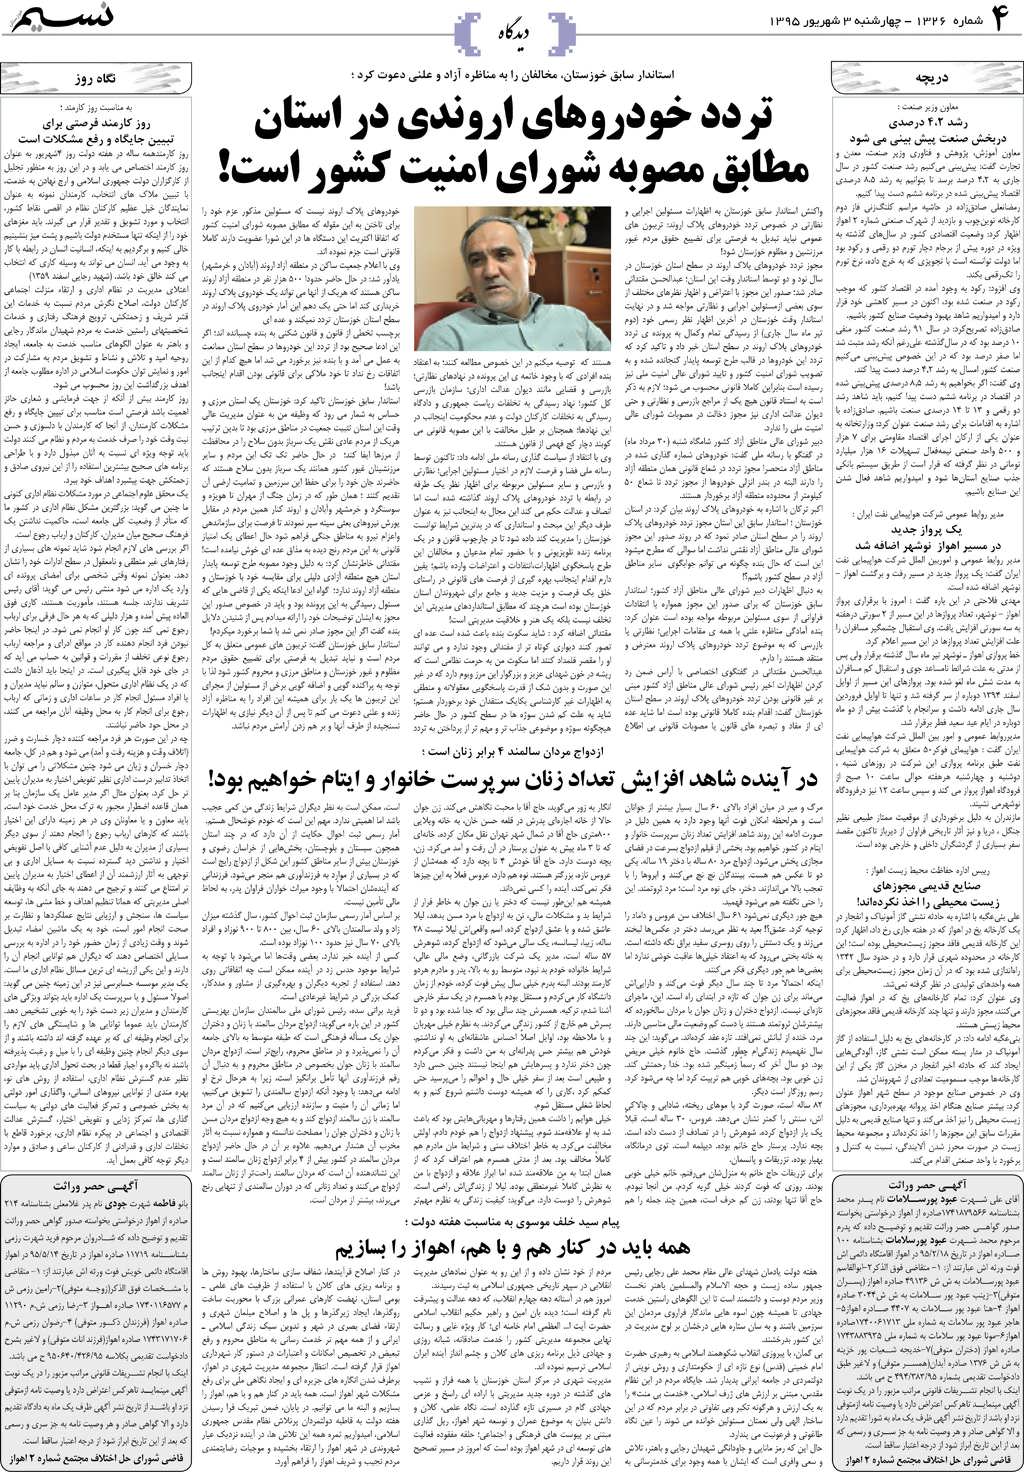 صفحه دیدگاه روزنامه نسیم شماره 1326